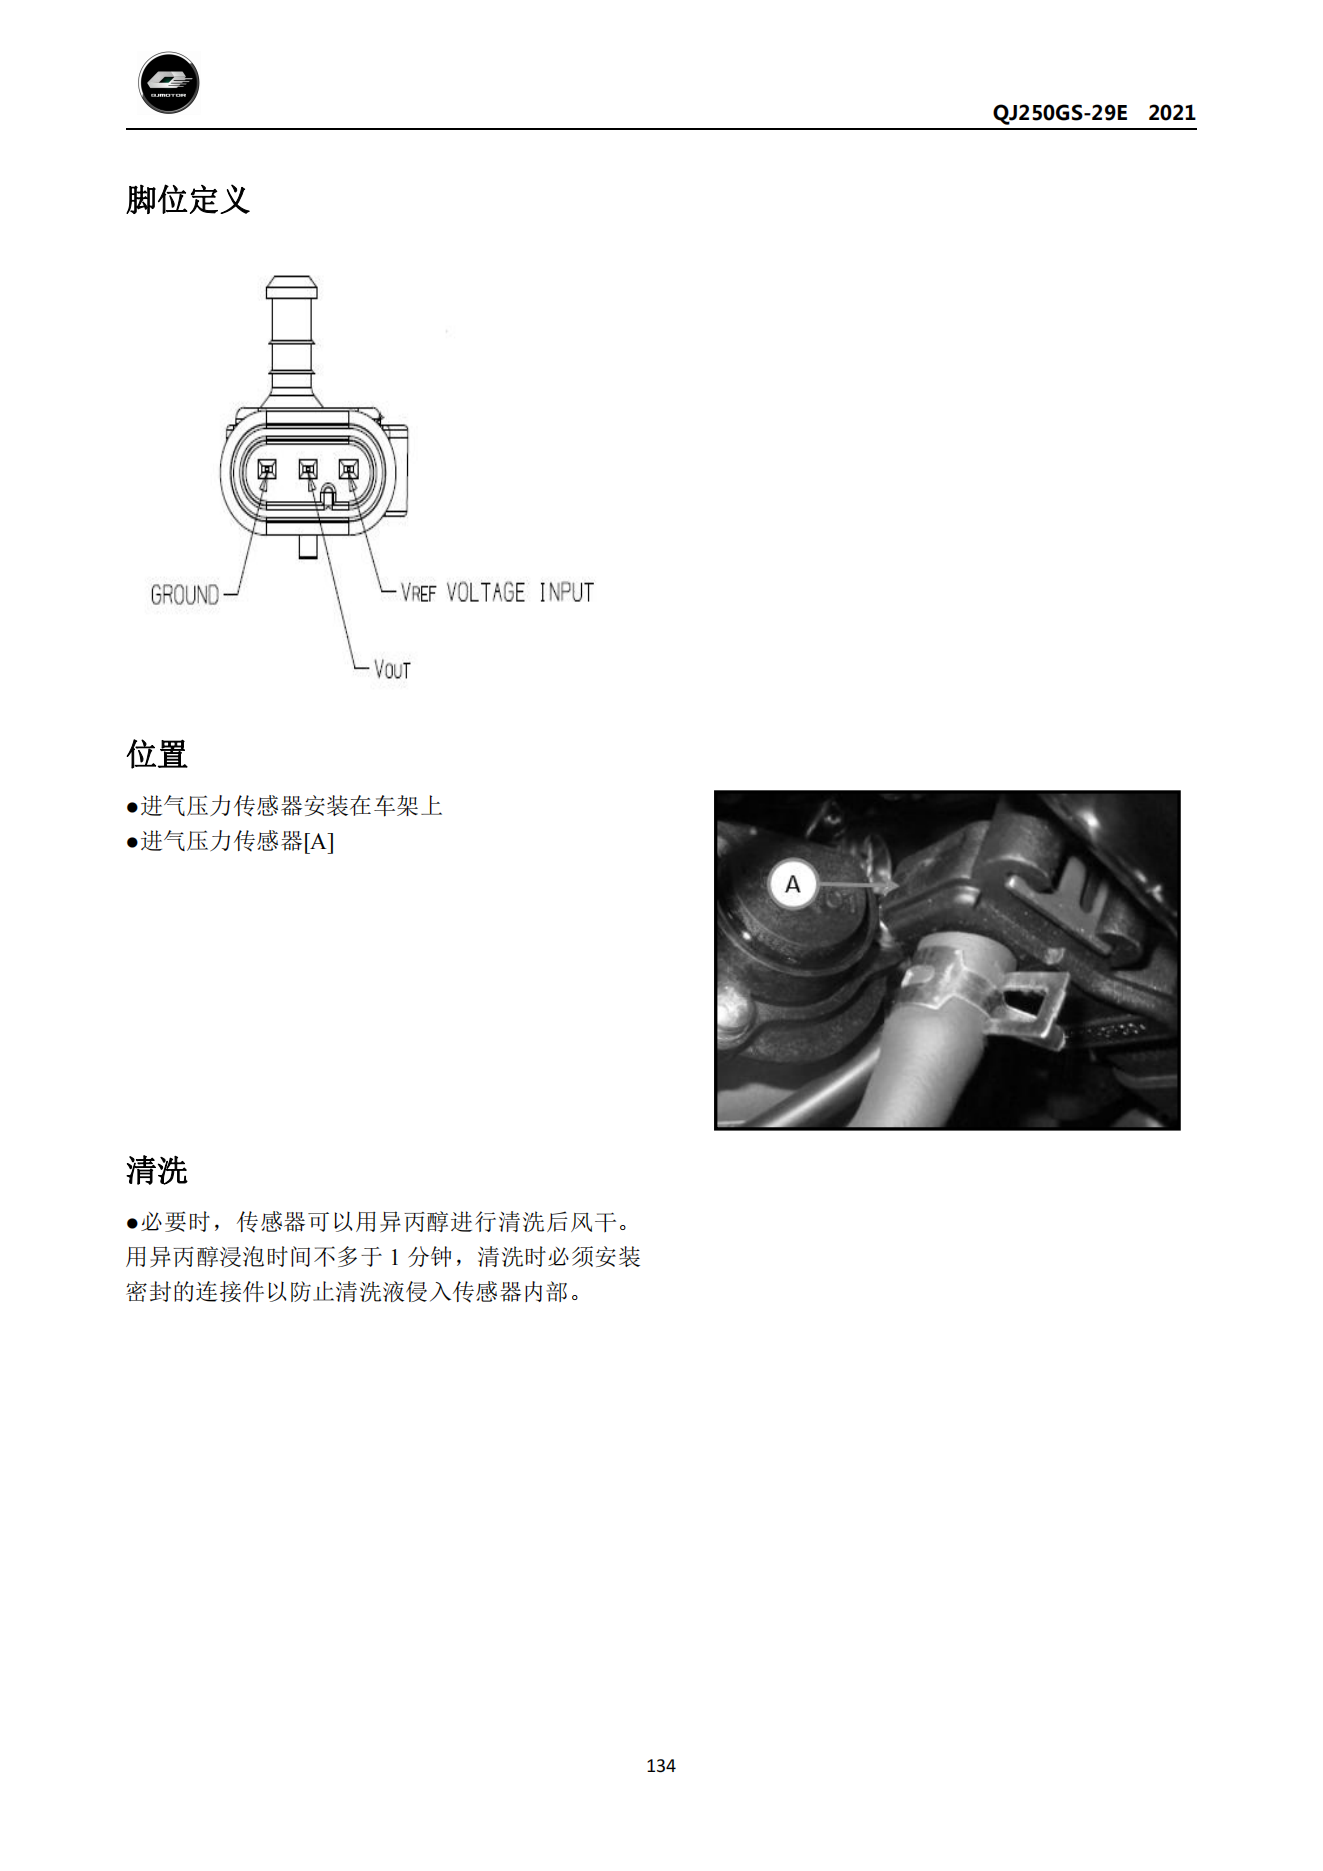 原版中文钱江赛250单摇臂QJ250GS-29E维修手册插图3